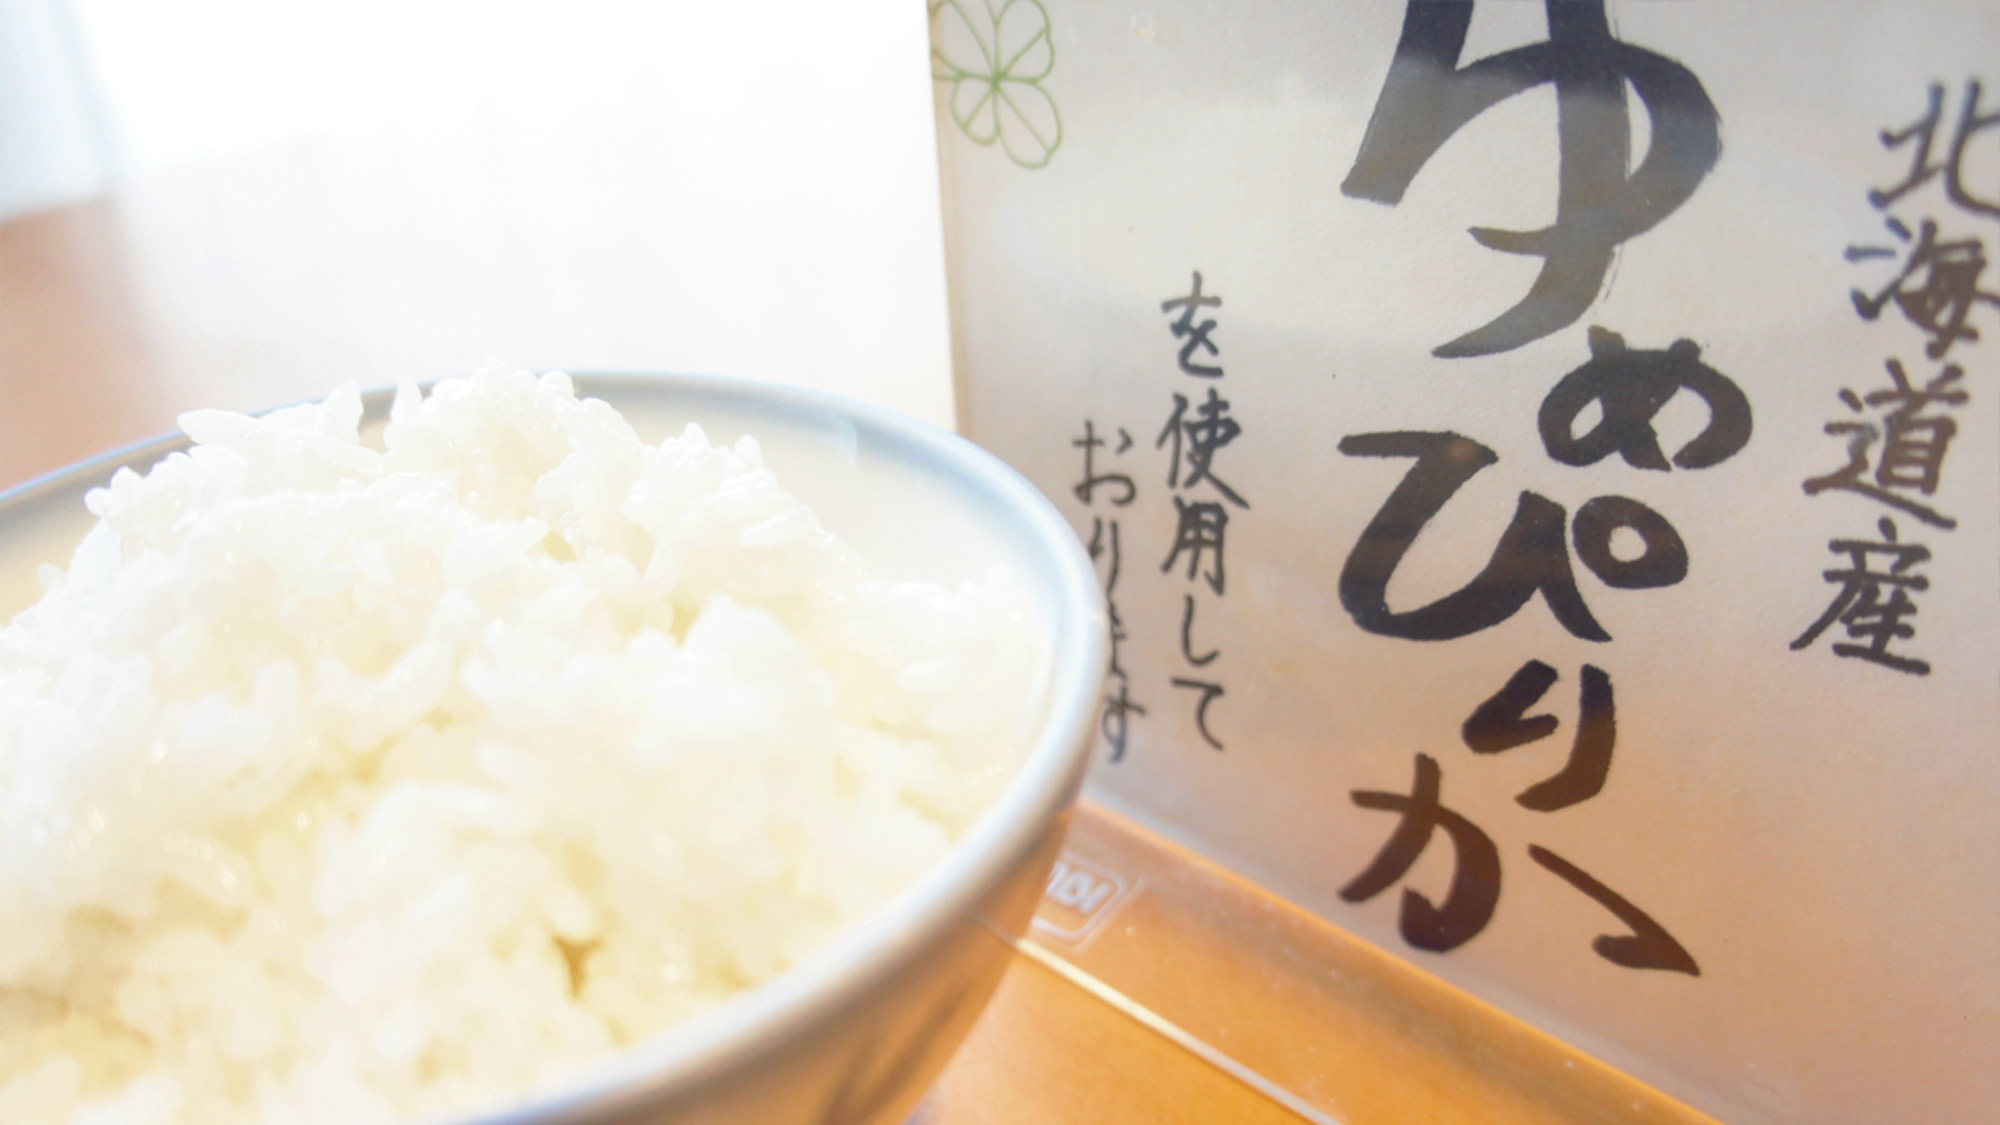 【食事】道産米のゆめぴりかを使用しています。